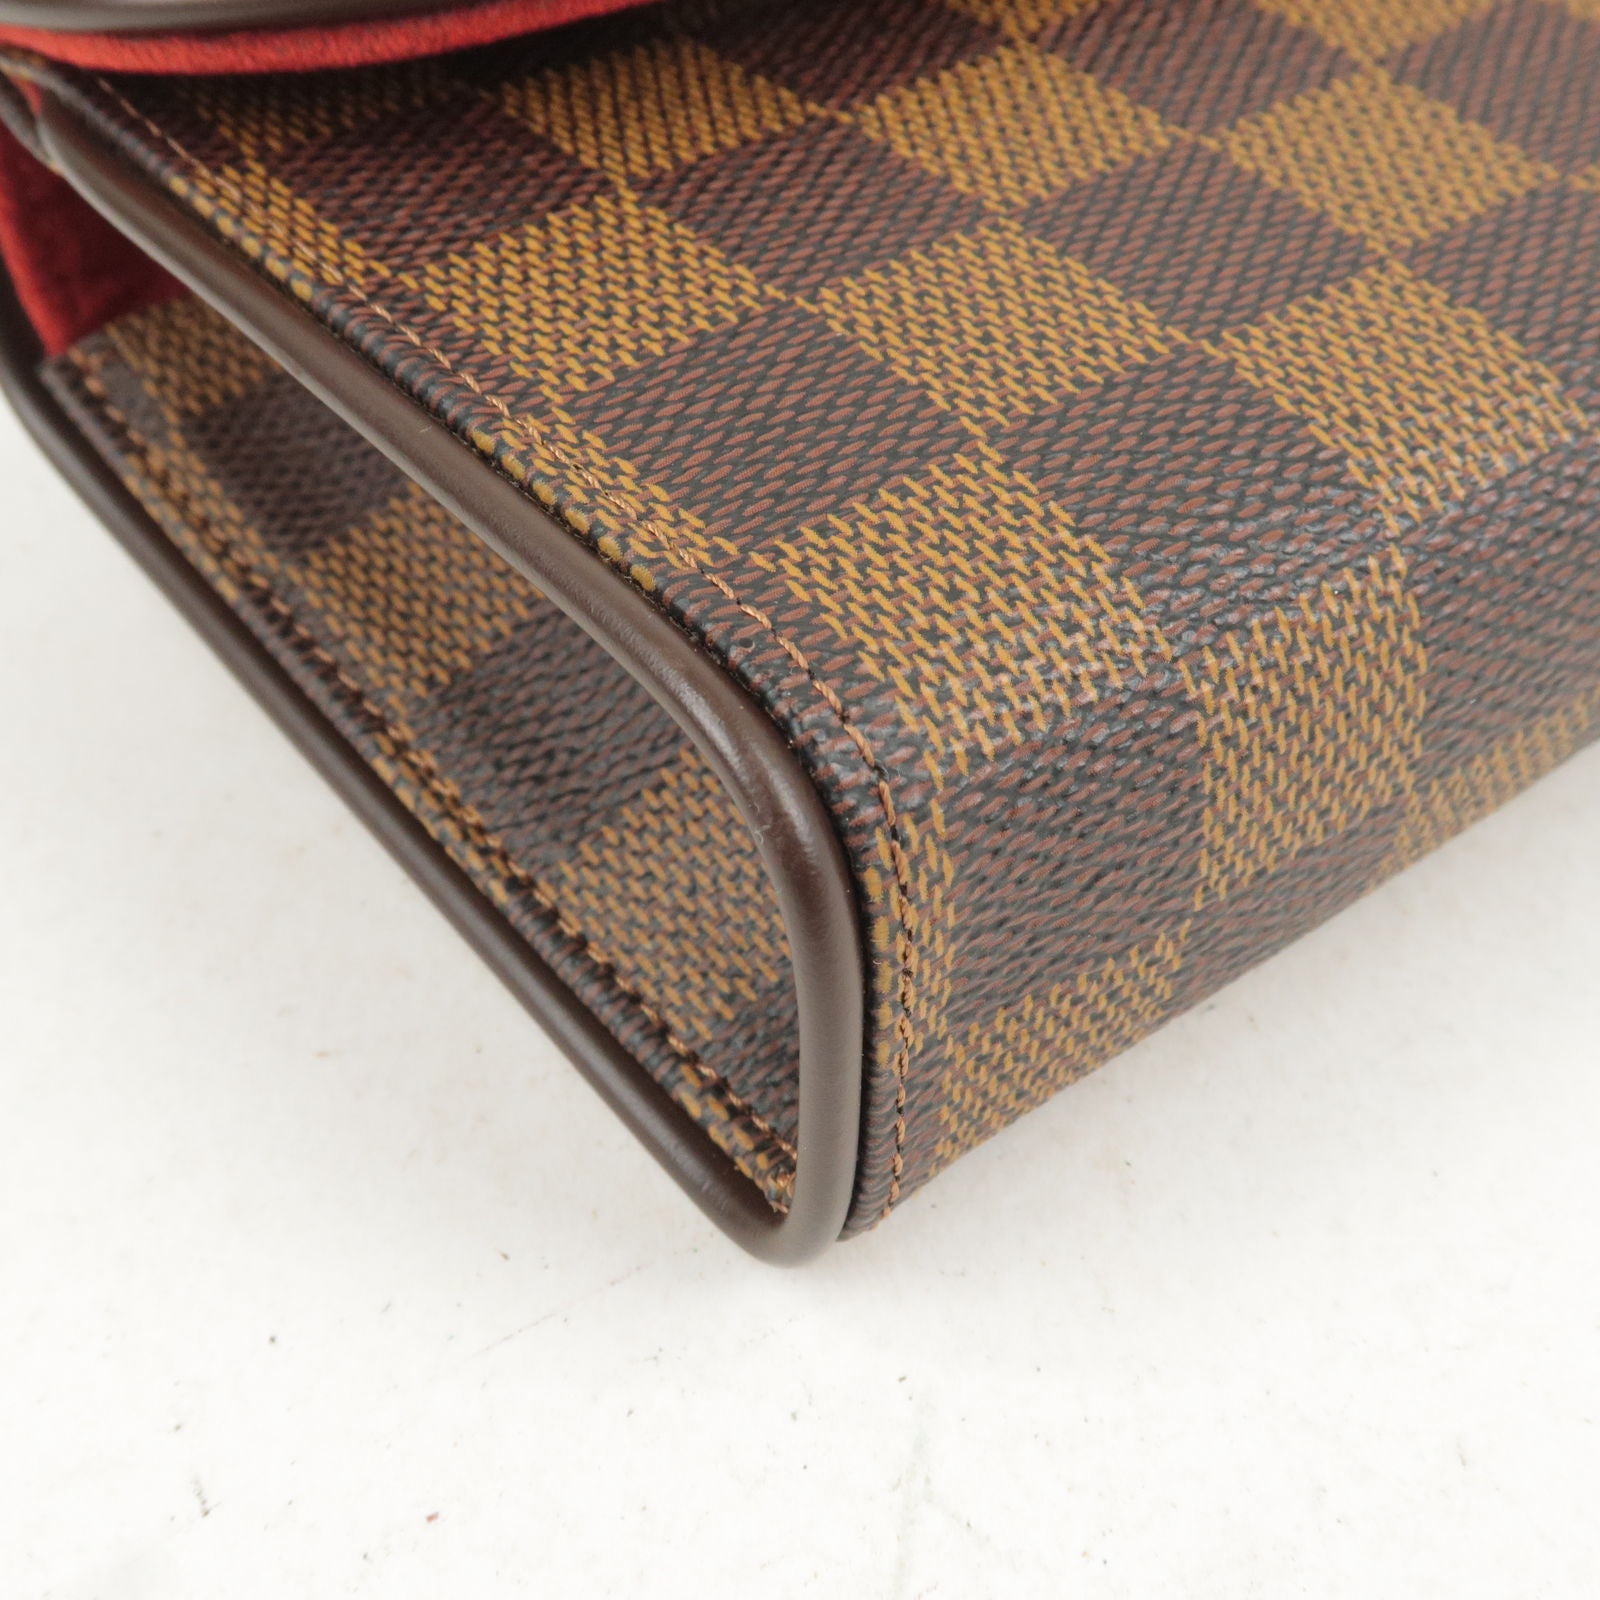 Louis Vuitton, Bags, Lv Florentine Belt Bag